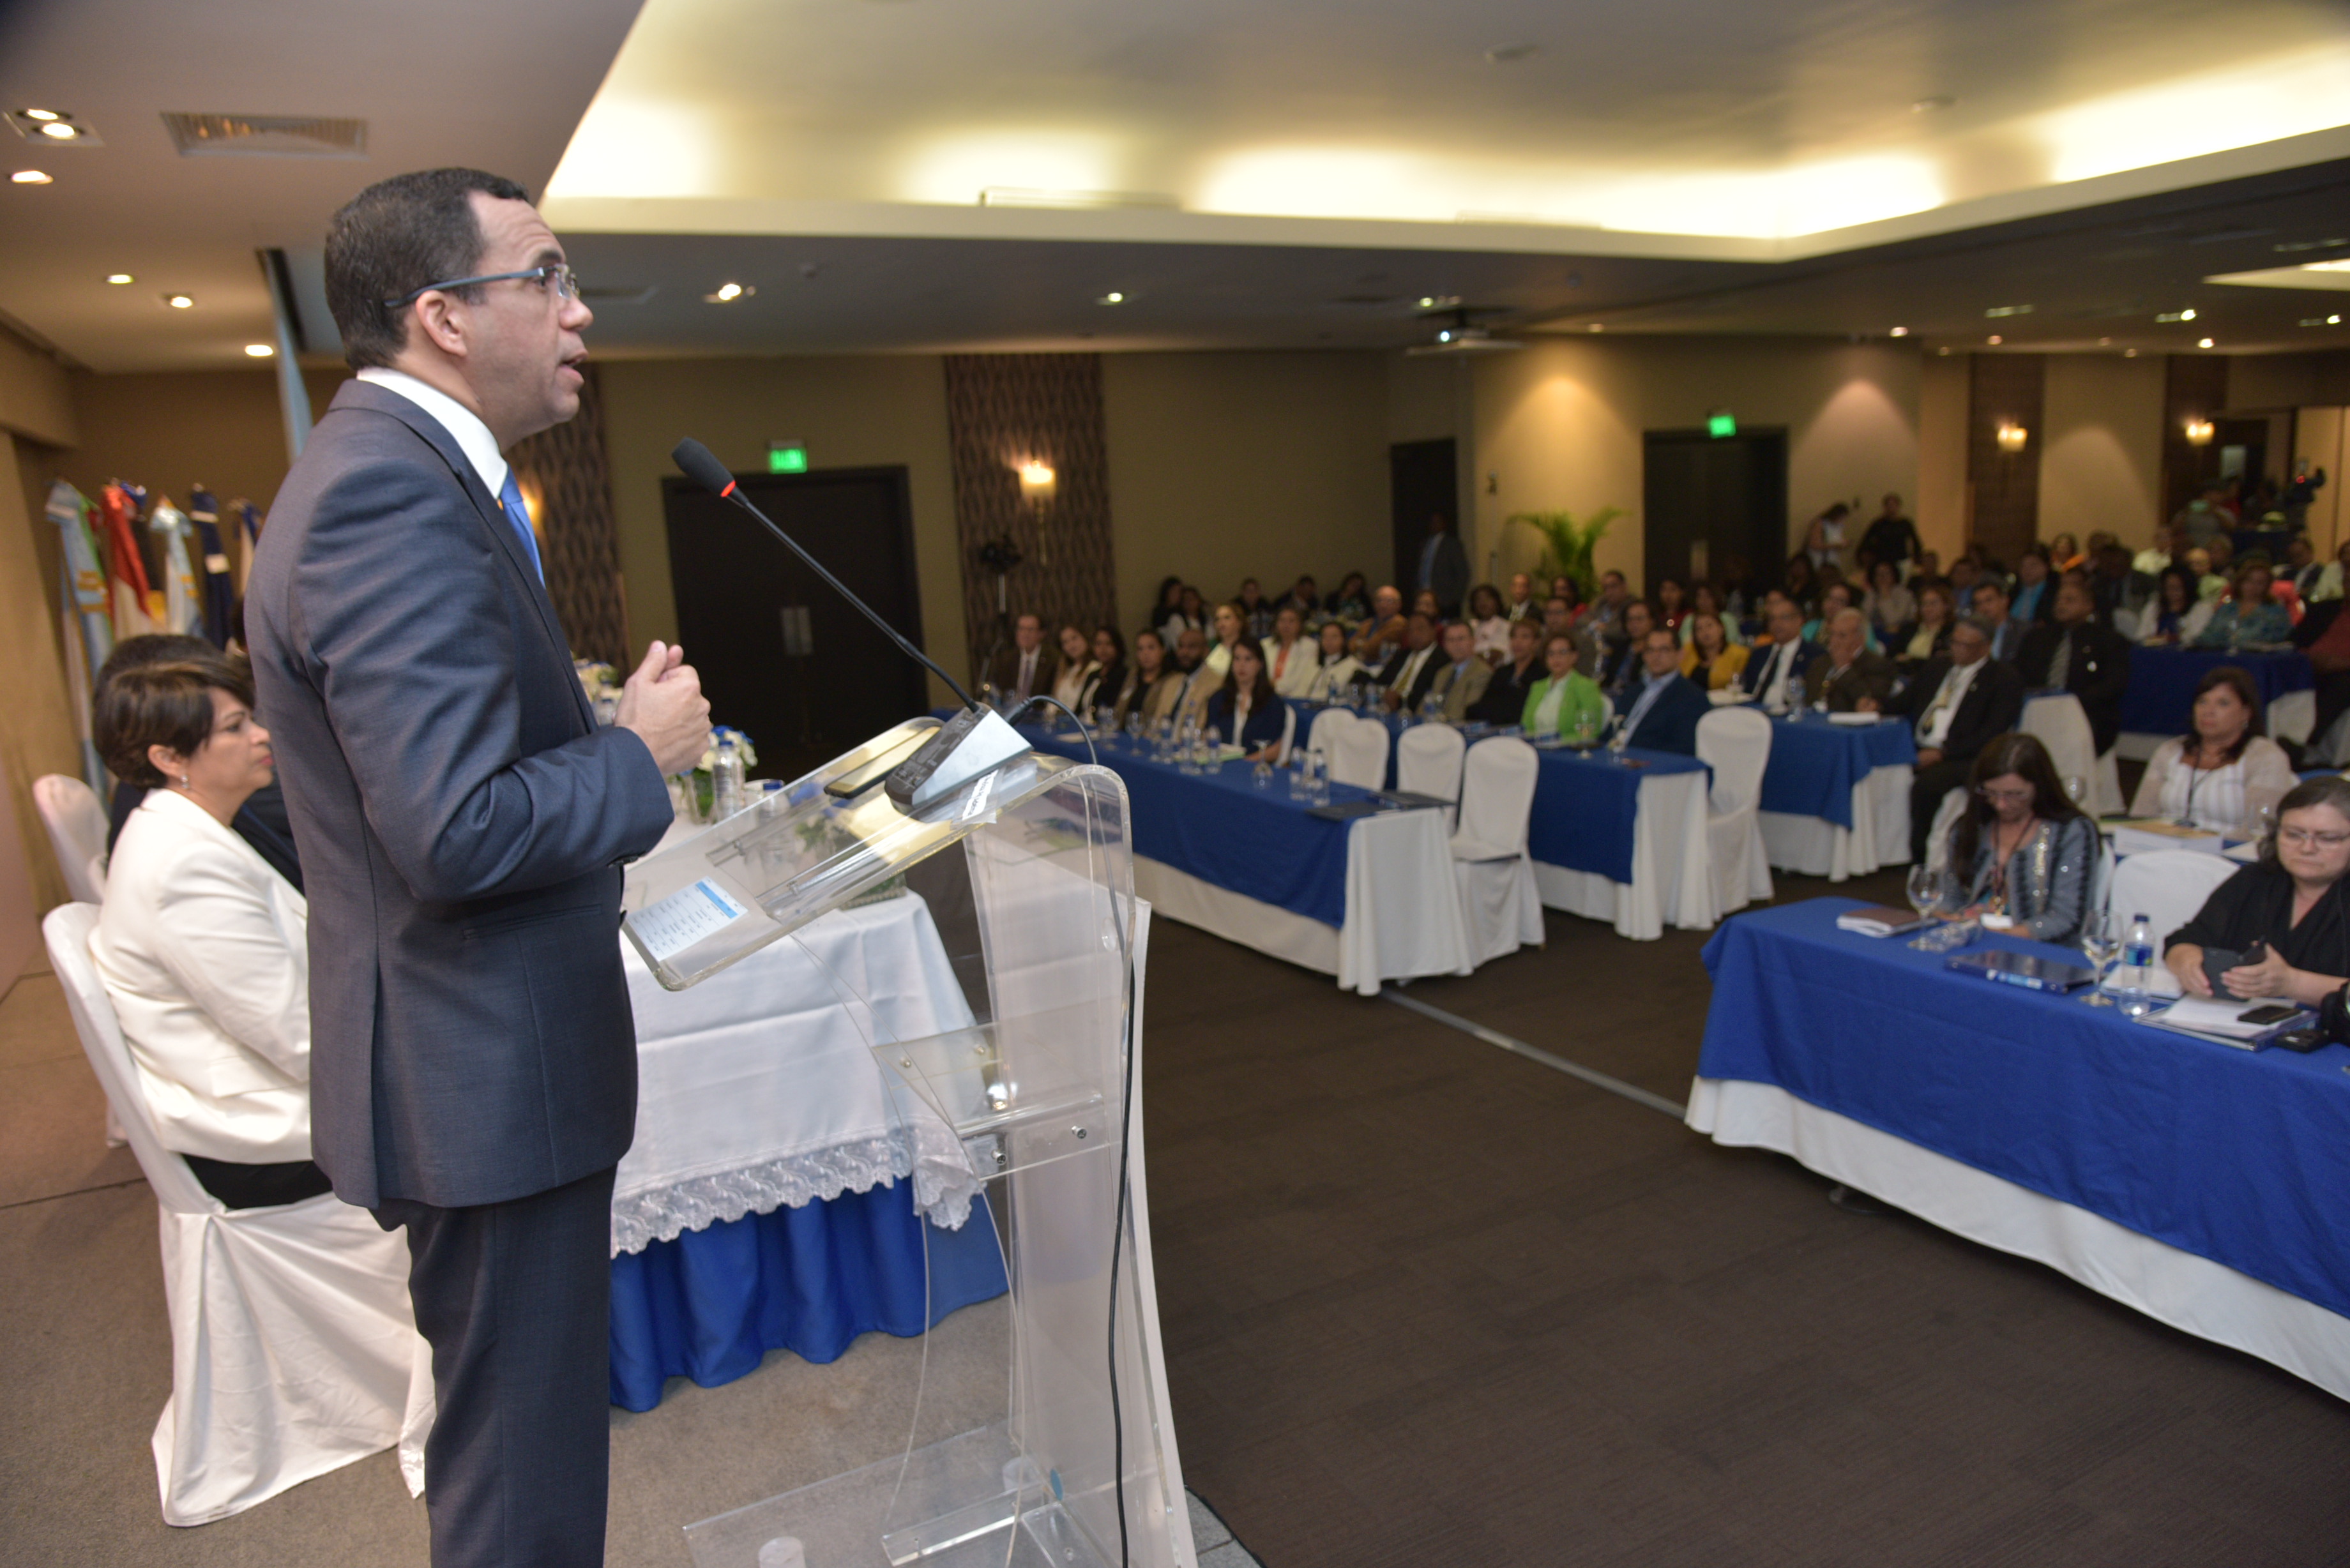  imagen Ministro Andrés Navarro de pie en podium se dirige a cientos de personas en lanzamiento de programa de formación de nuevos directores de escuelas  